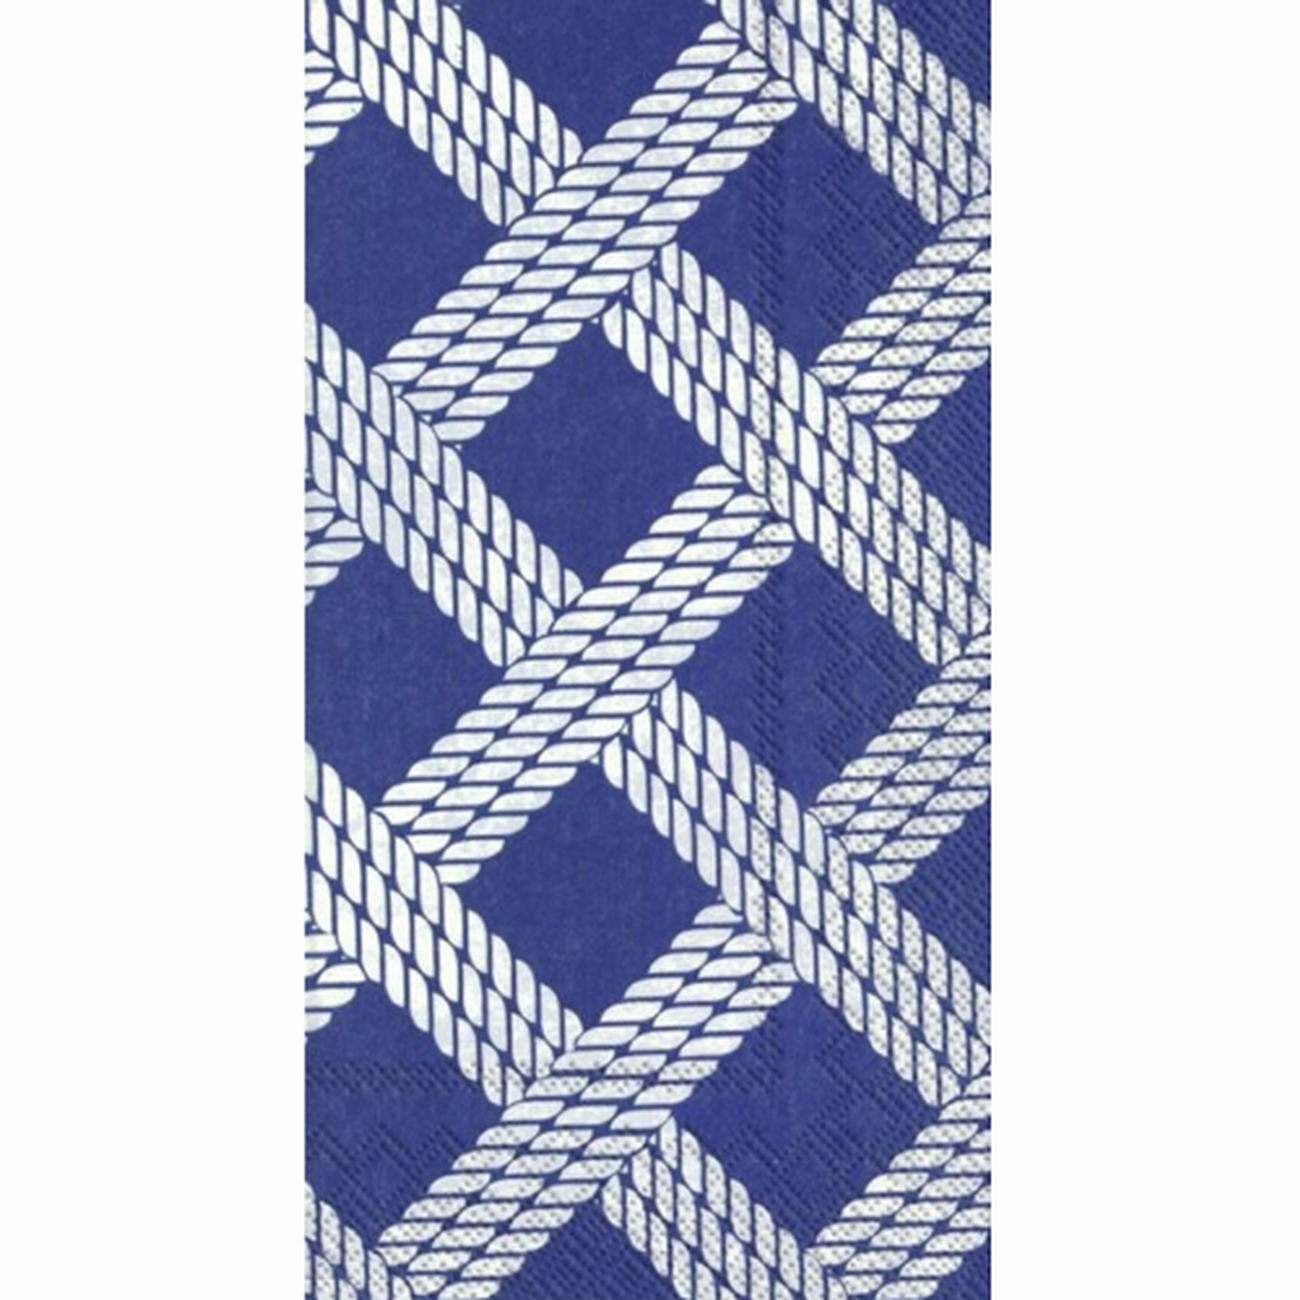 ihr-sailors-rope-blue-guest-serviettes - IHR Guest Serviettes Sailors Rope Blue